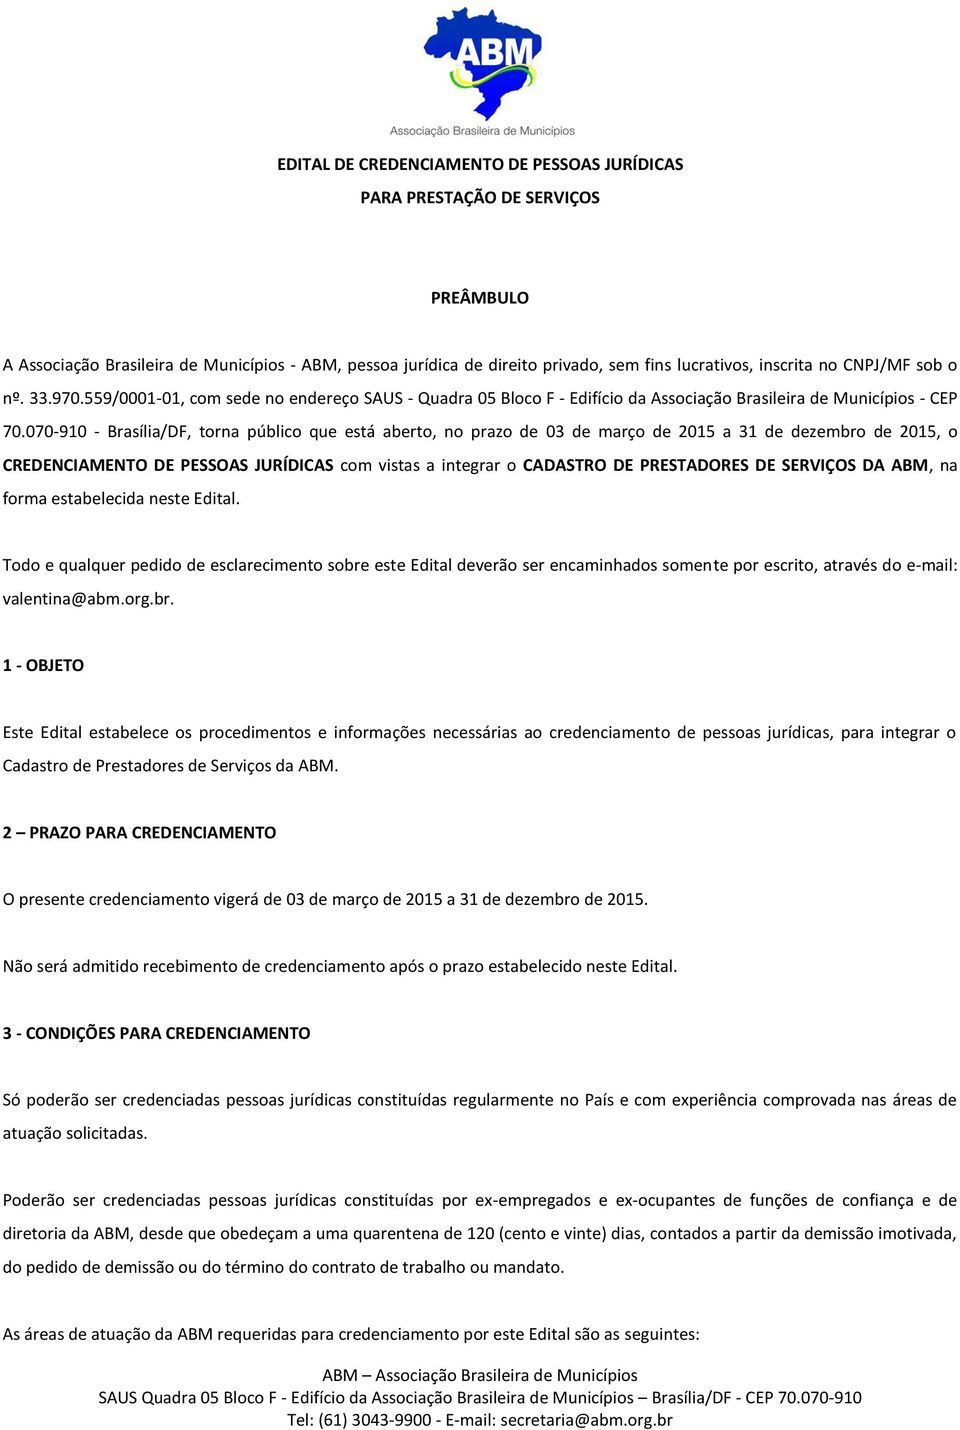 070-910 - Brasília/DF, torna público que está aberto, no prazo de 03 de março de 2015 a 31 de dezembro de 2015, o CREDENCIAMENTO DE PESSOAS JURÍDICAS com vistas a integrar o CADASTRO DE PRESTADORES